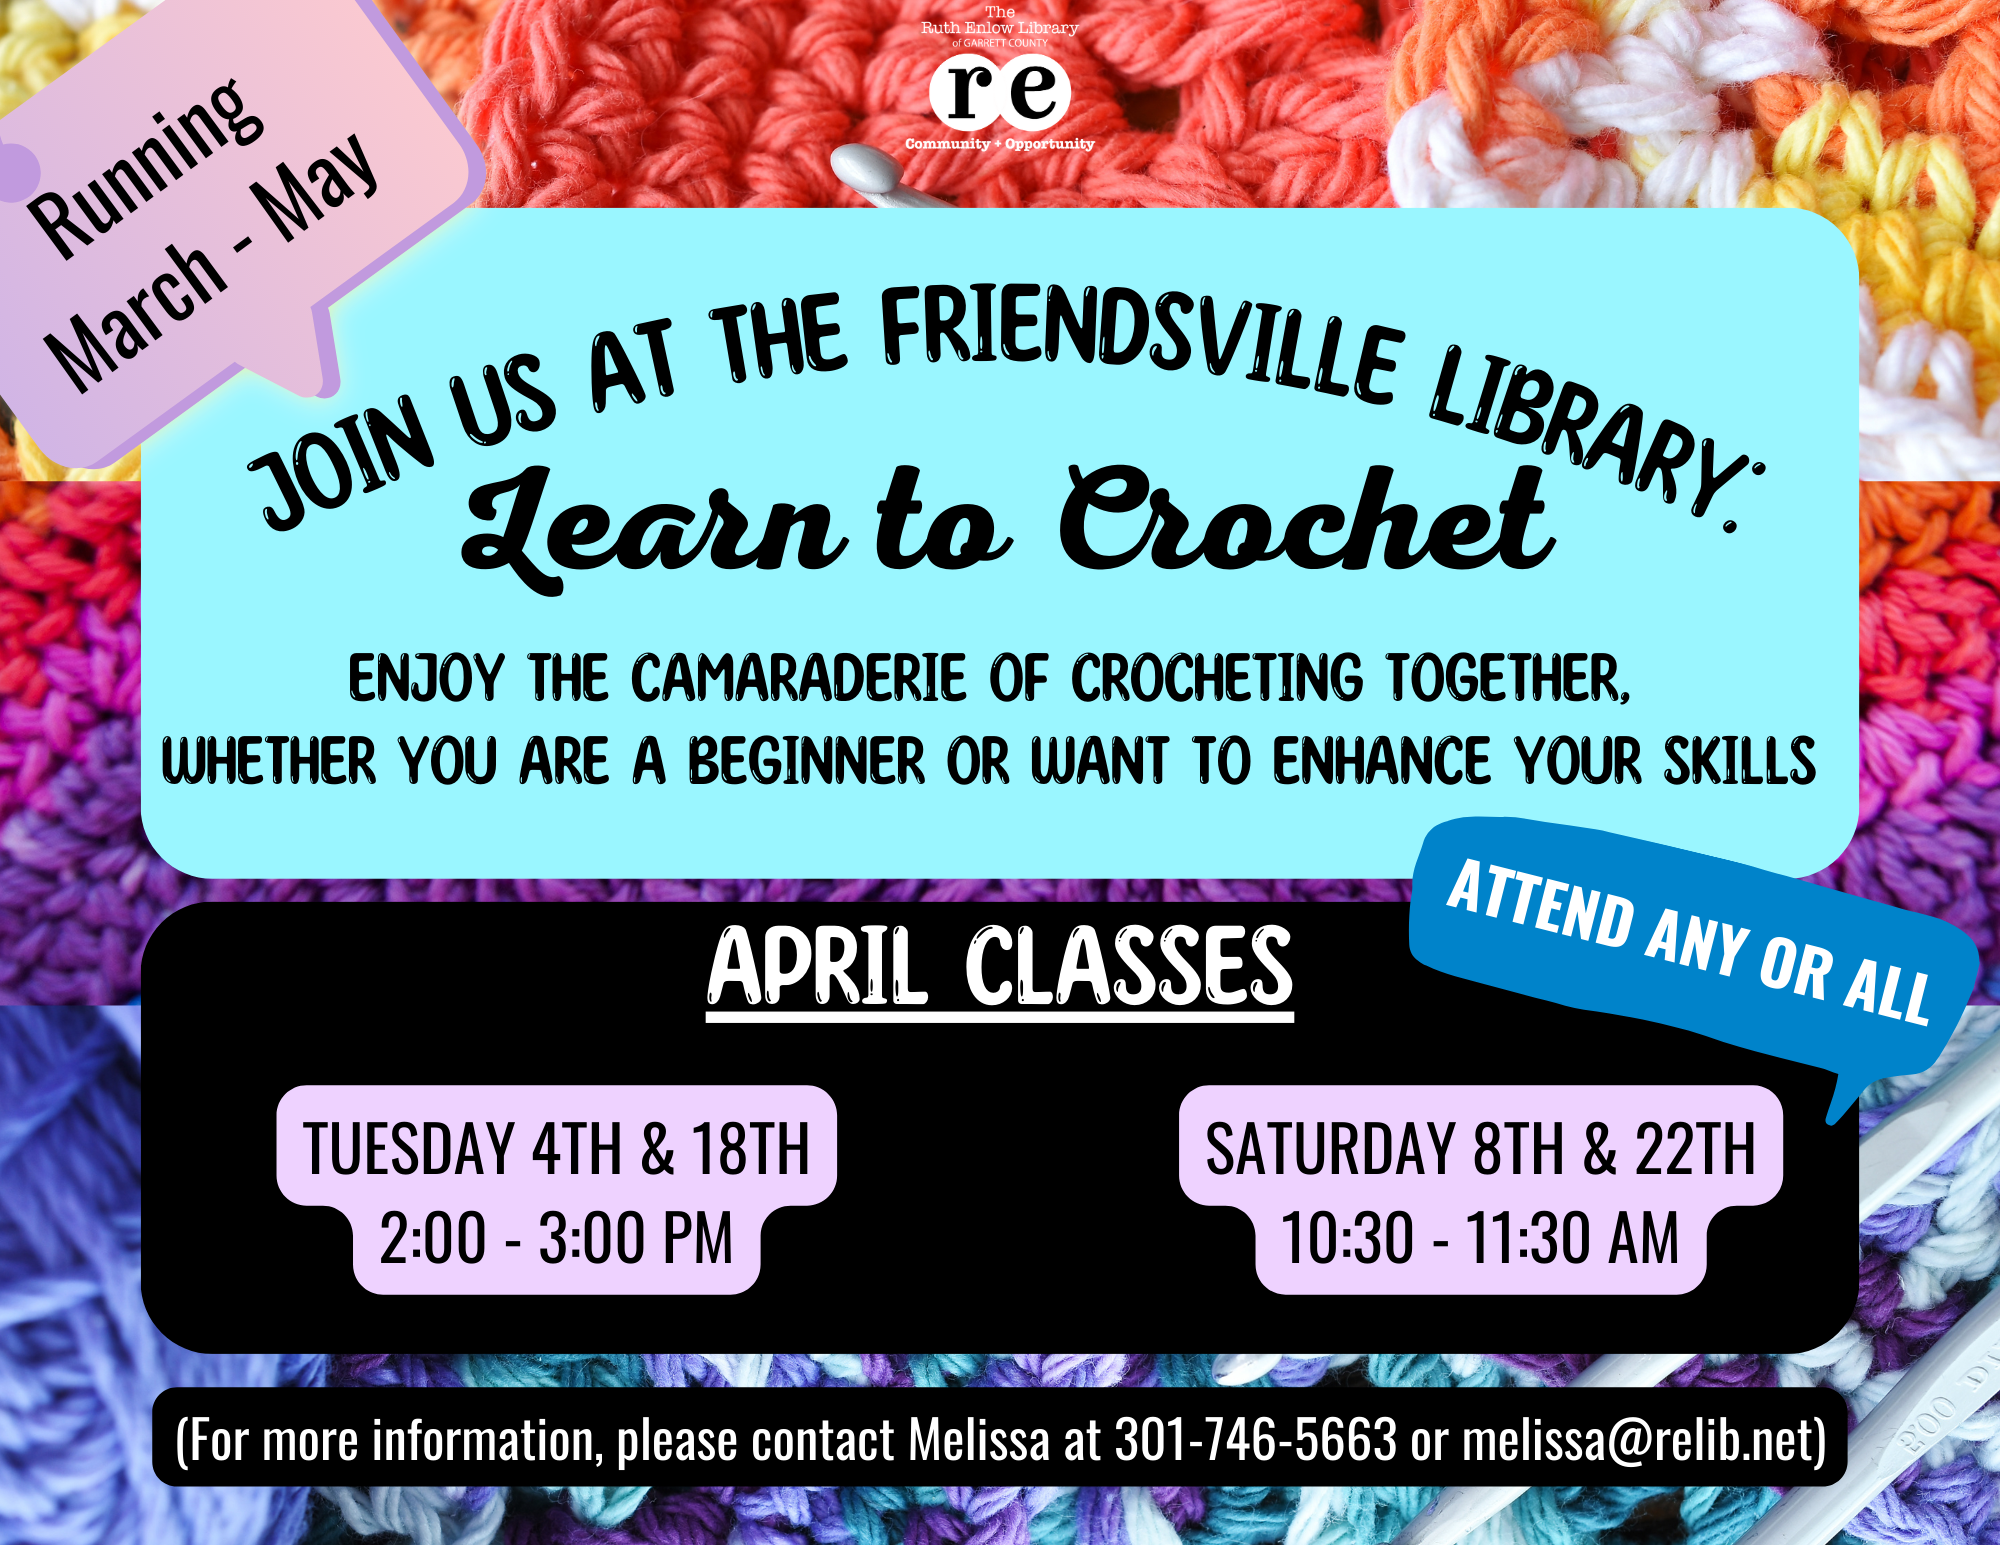 Flyer displaying crochet materials and information regarding a crochet class